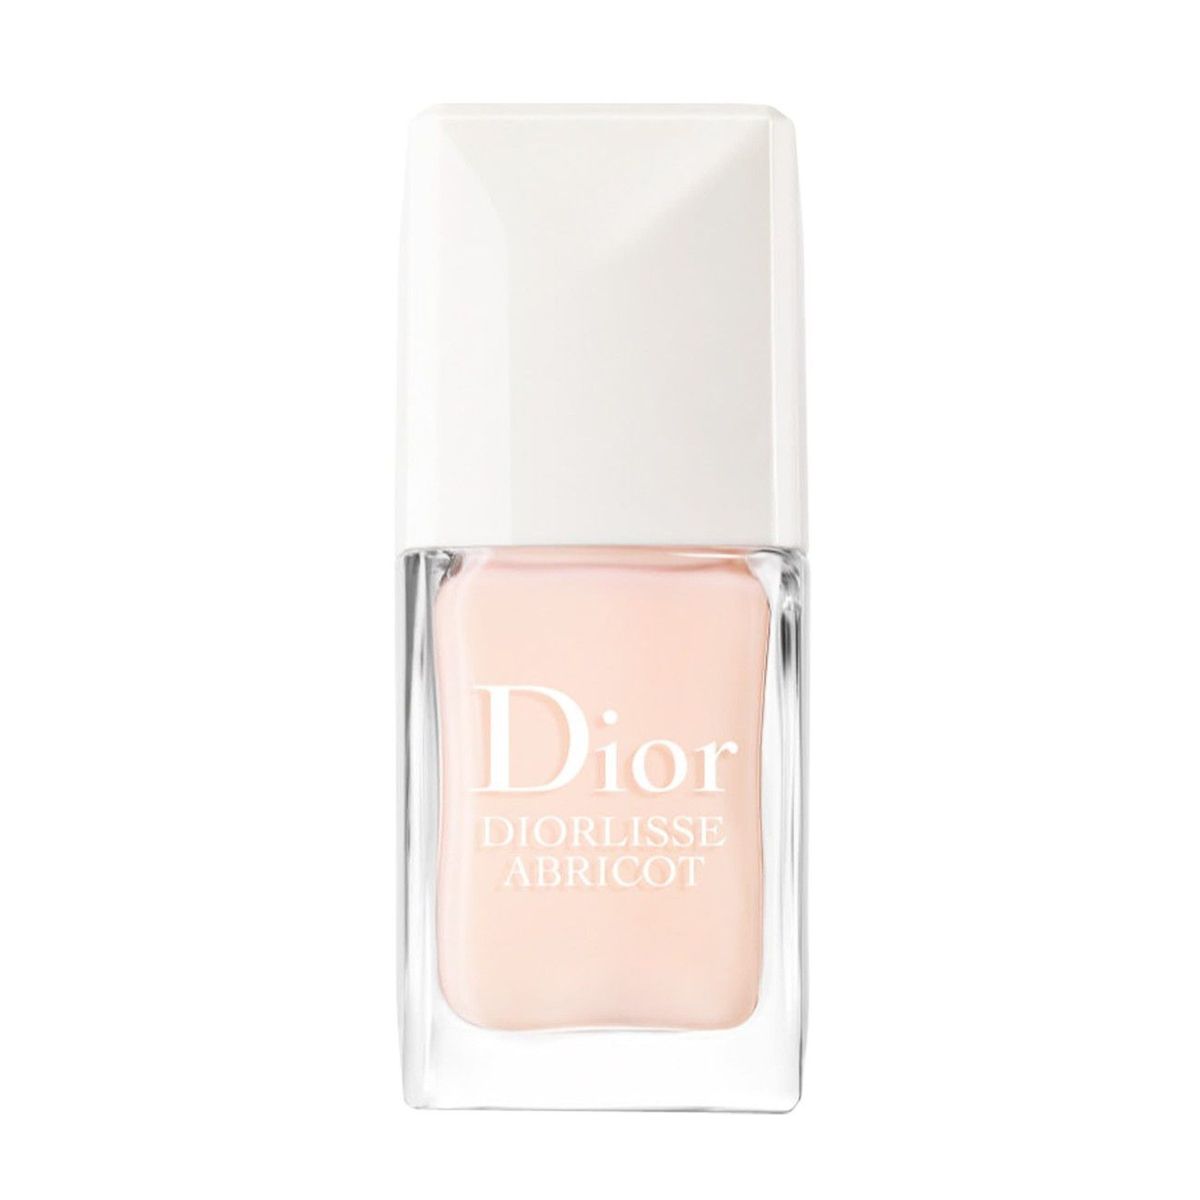 Bottiglia di smalto per unghie Dior base coat su uno sfondo bianco.